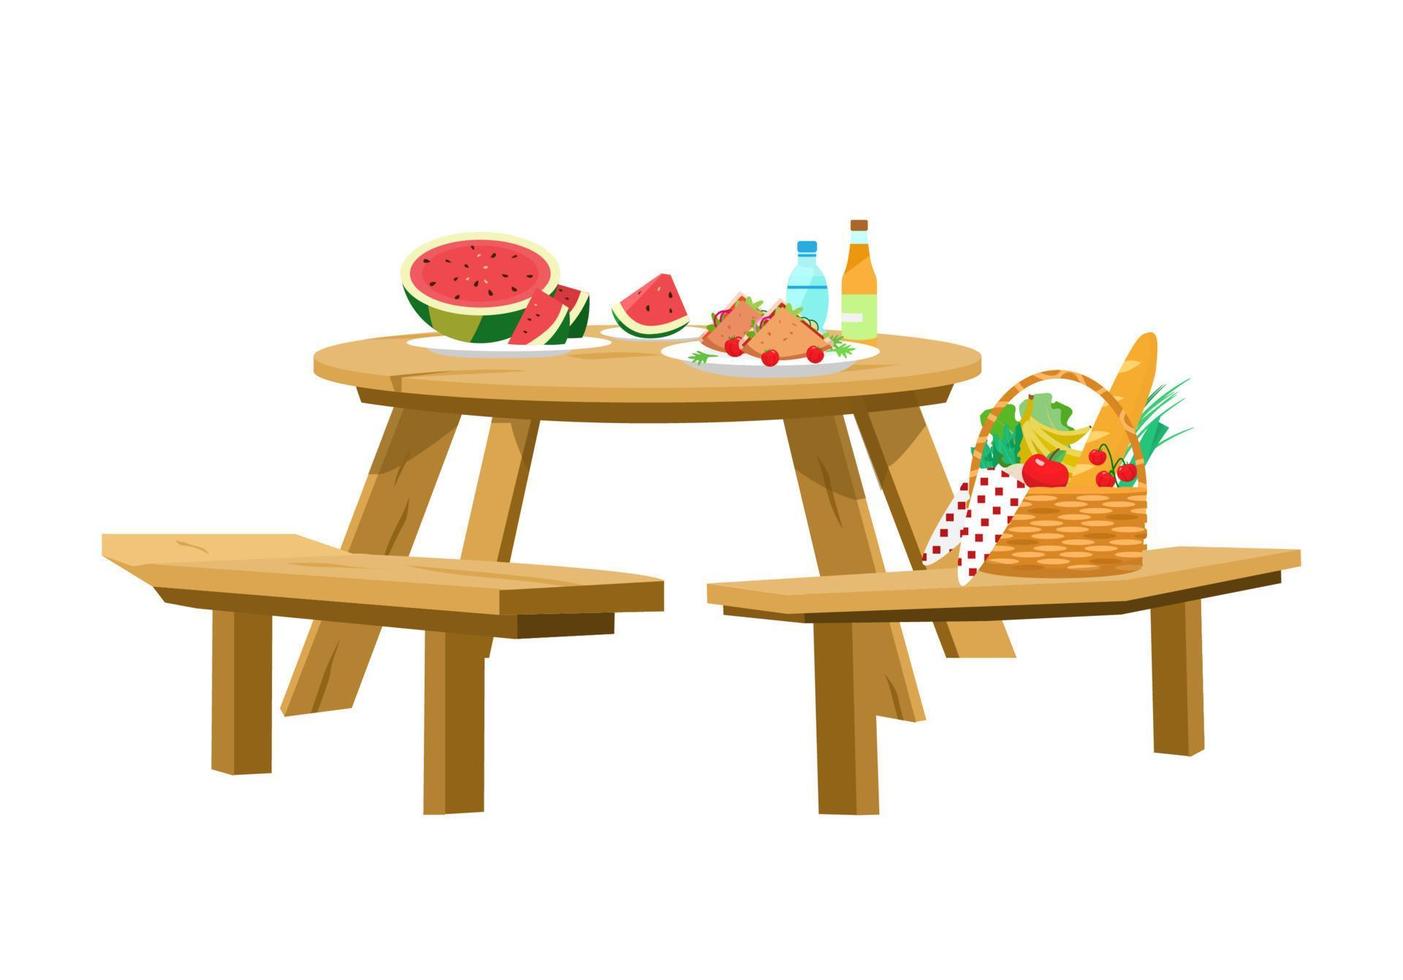 vektorillustration des servierten picknicktisches isoliert auf weiß. picknickkorb, wassermelone mit scheiben, sandwiches, wasser, limonade. Runder Holztisch mit Bänken. vektor